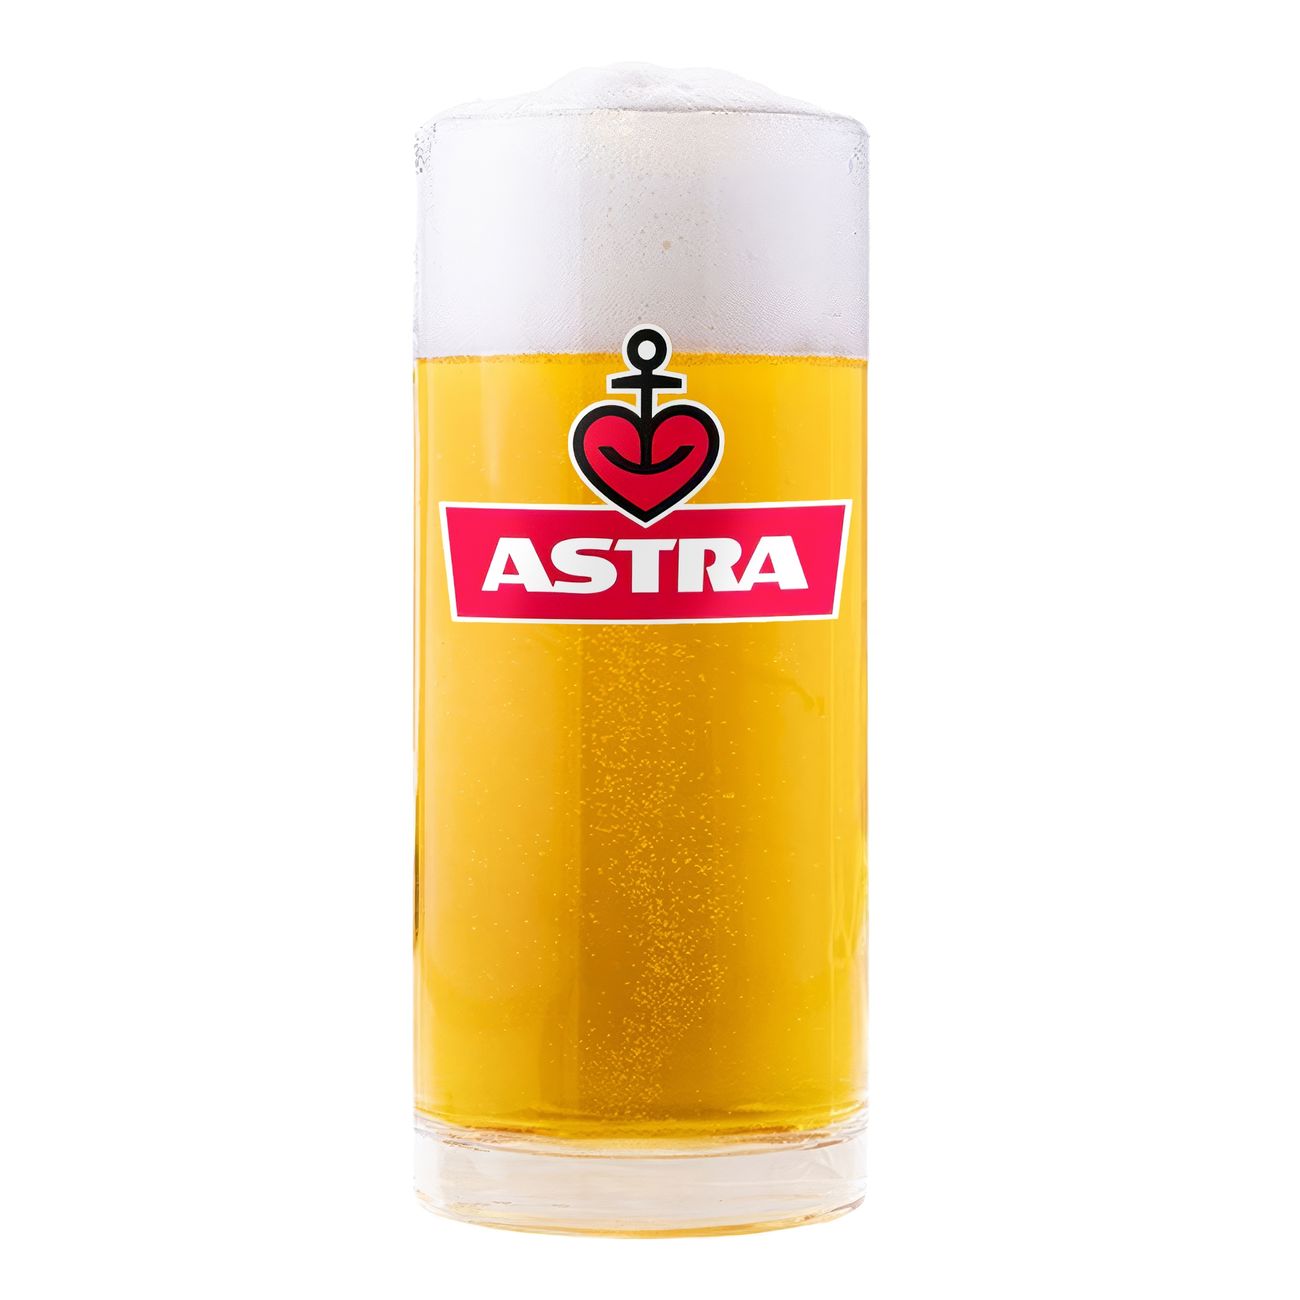 astra-olsejdel-96826-2